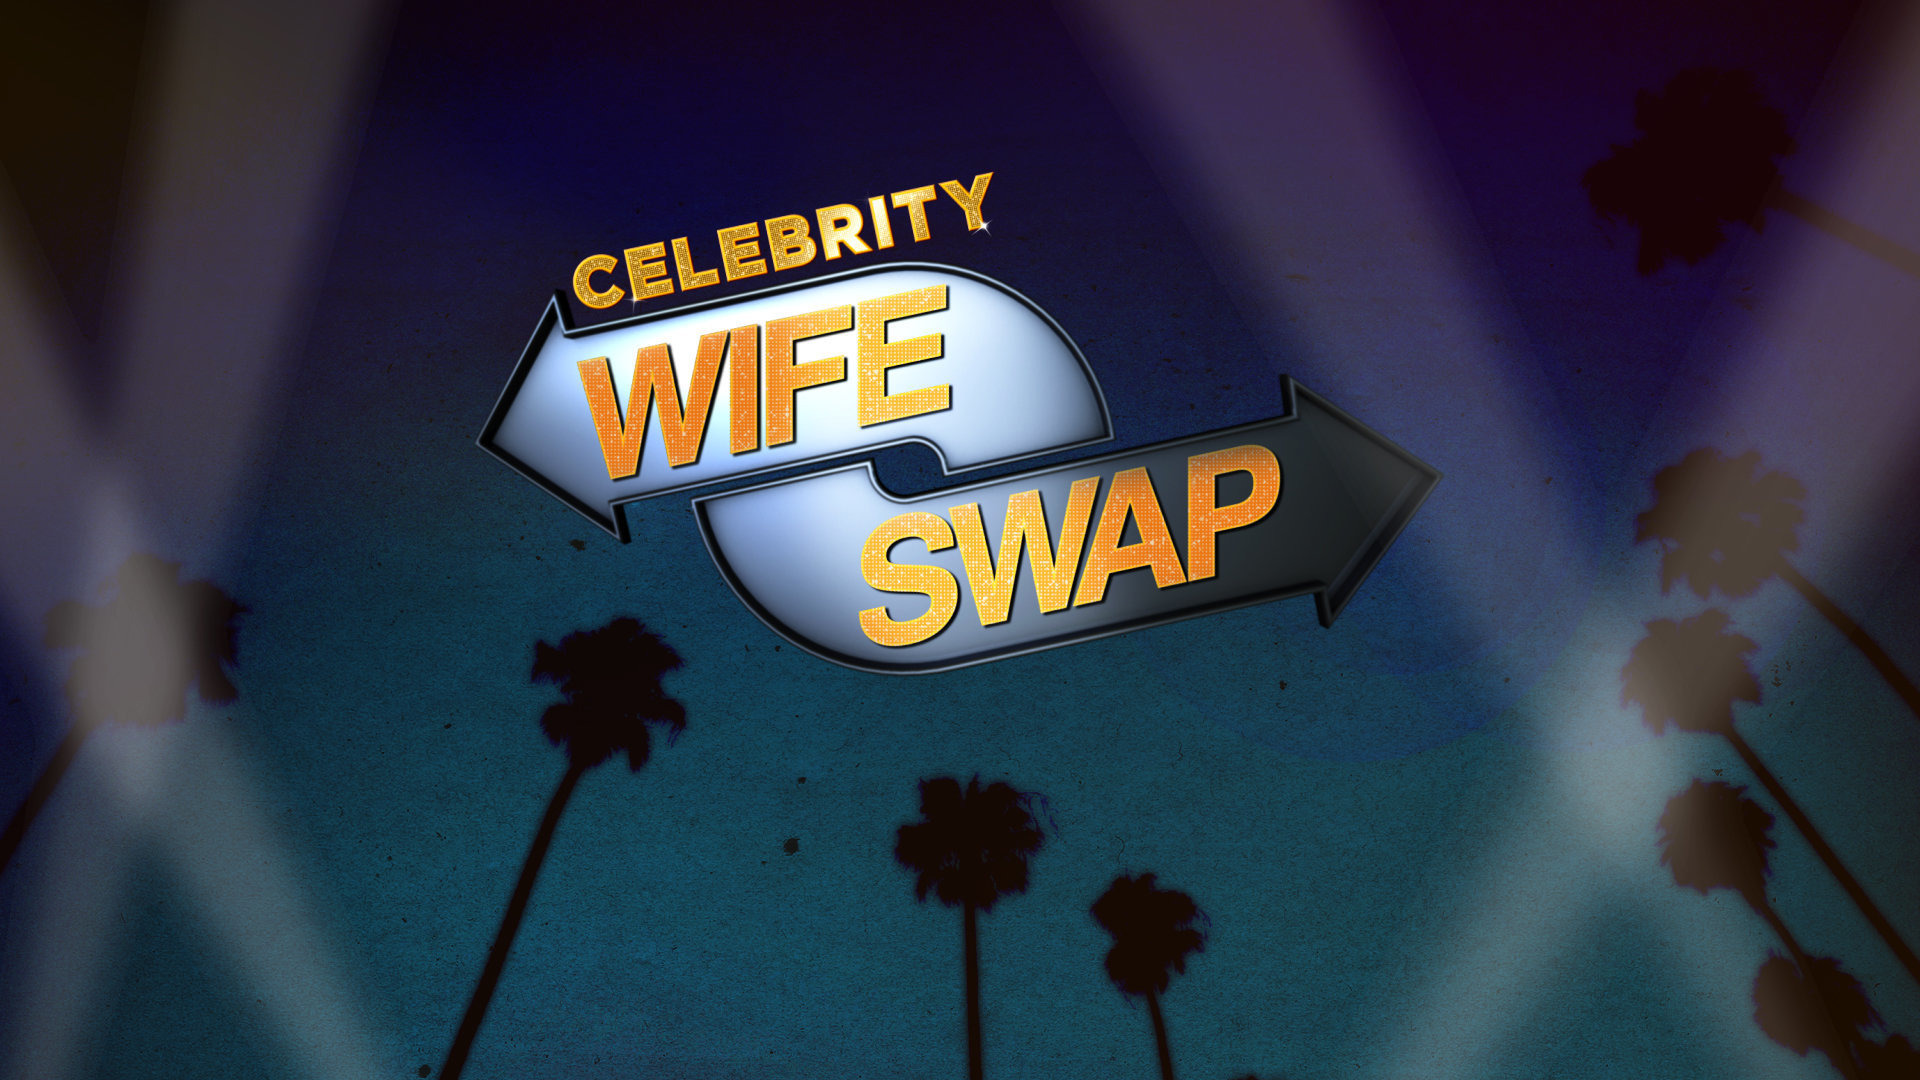 Show Celebrity Wife Swap